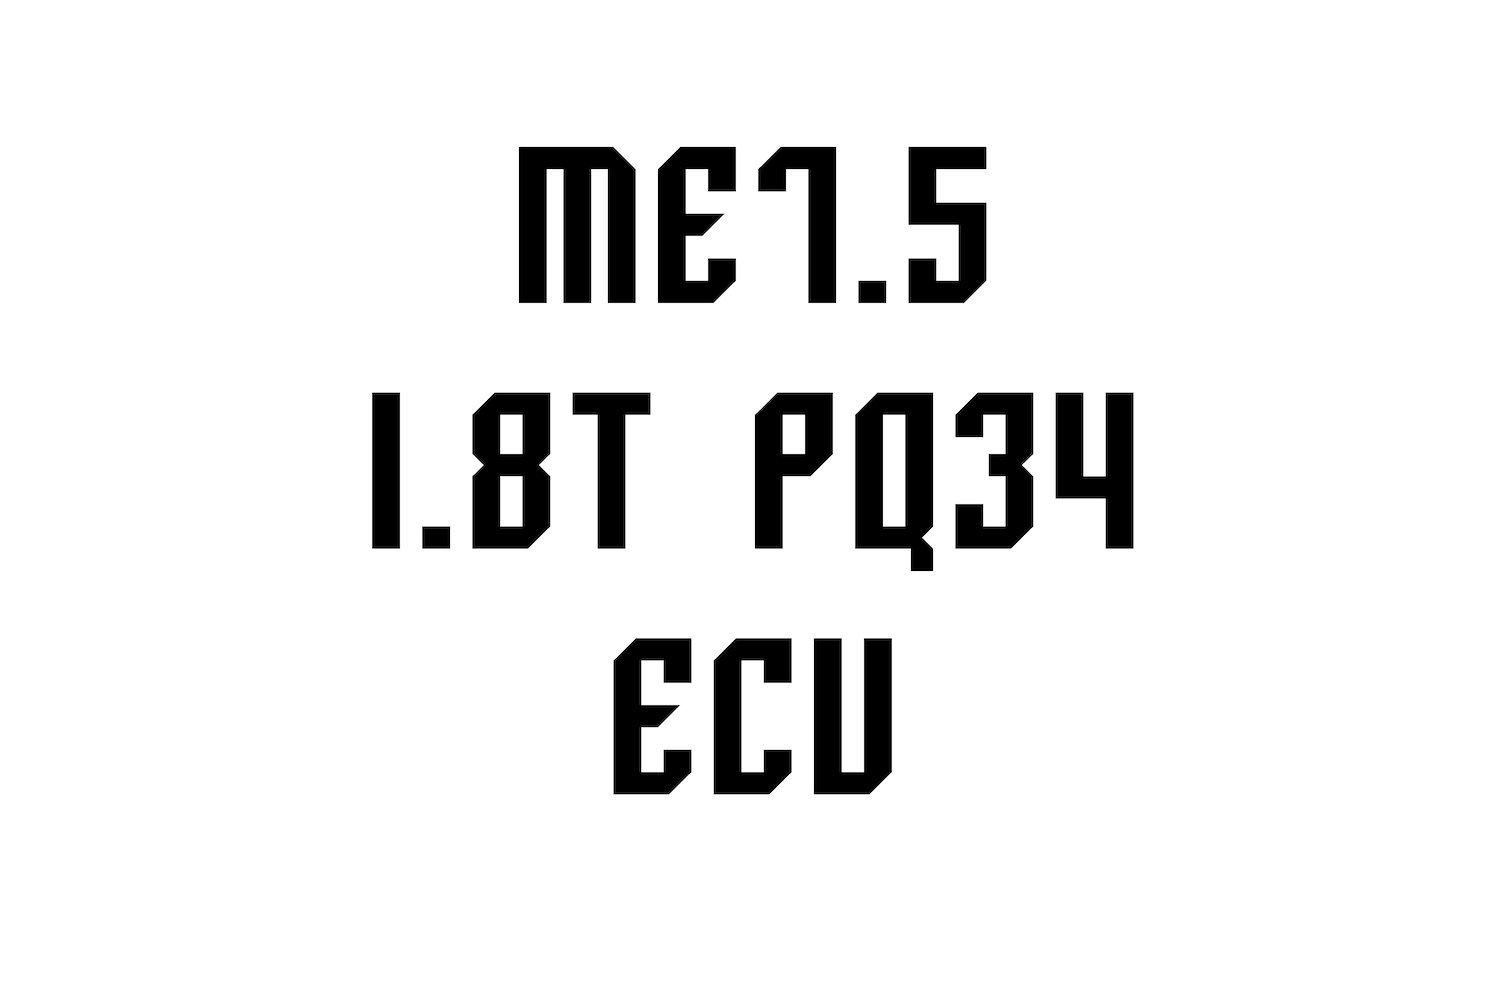 06a-technik - Stock ME7.5 1.8T ECU PQ34 Golf/Jetta/Beetle - 